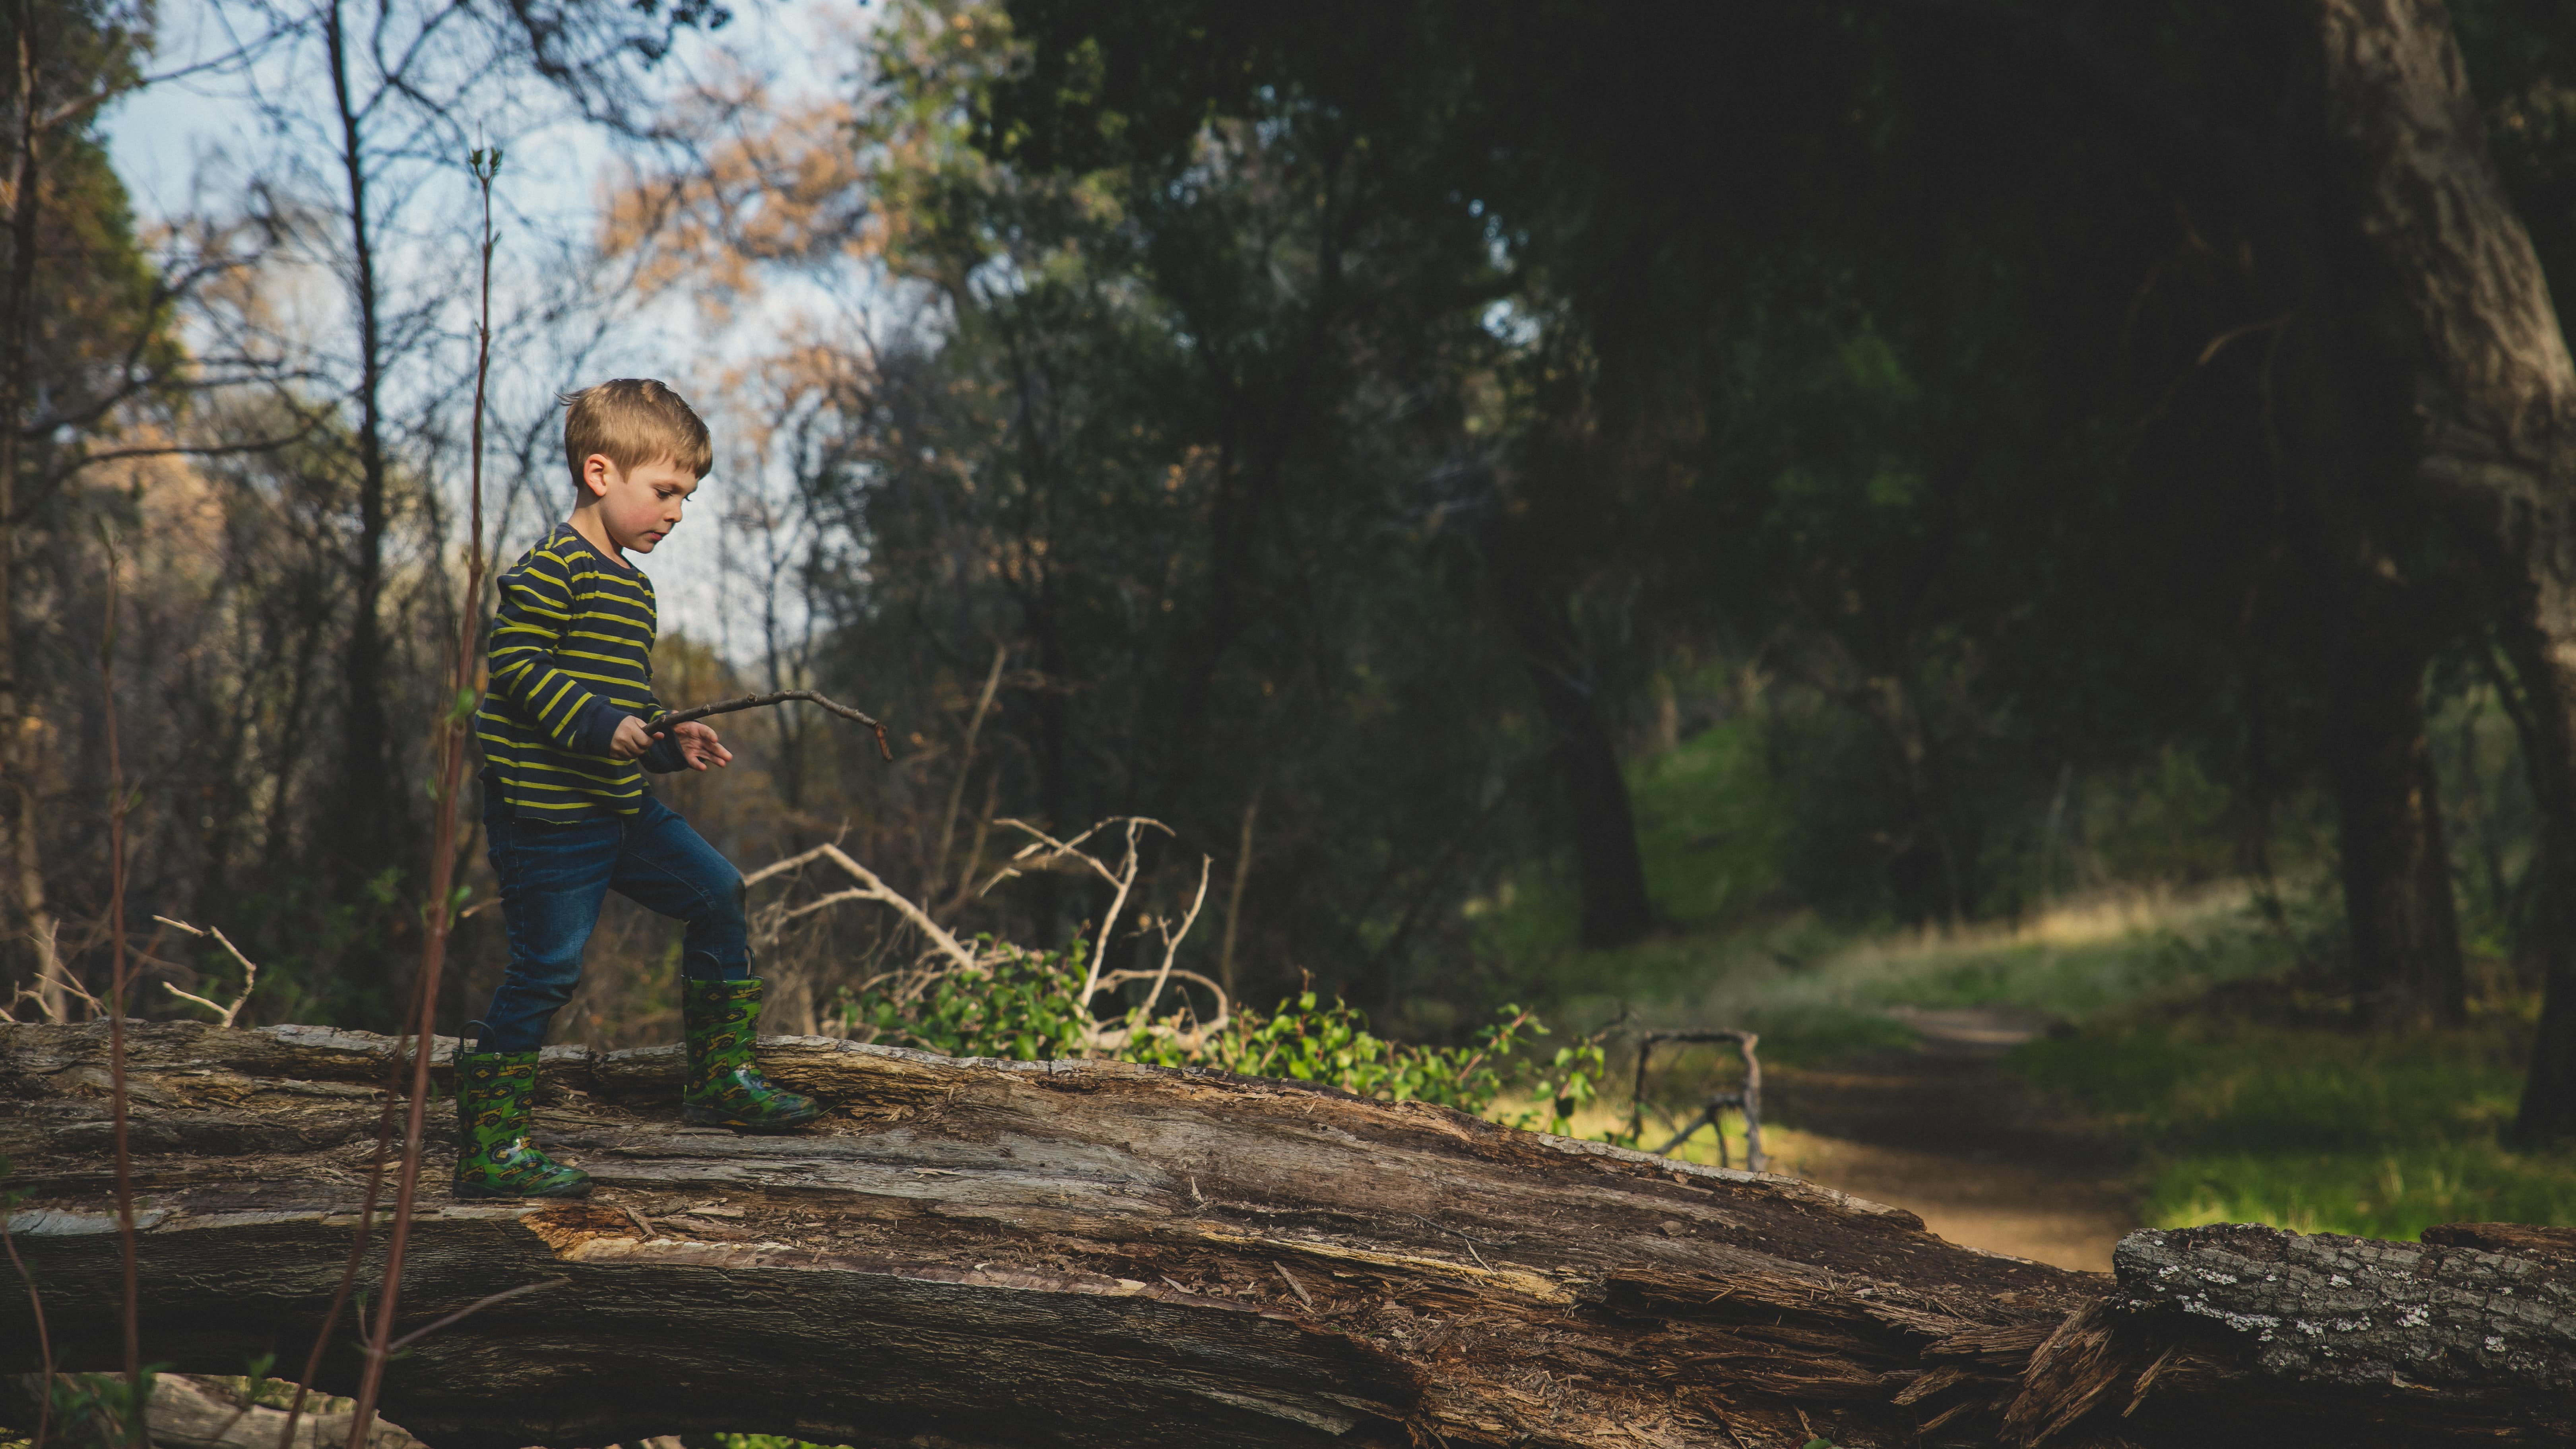 Dans une forêt, un garçonnet marche sur un tronc d’arbre déraciné en tenant une petite branche à la main